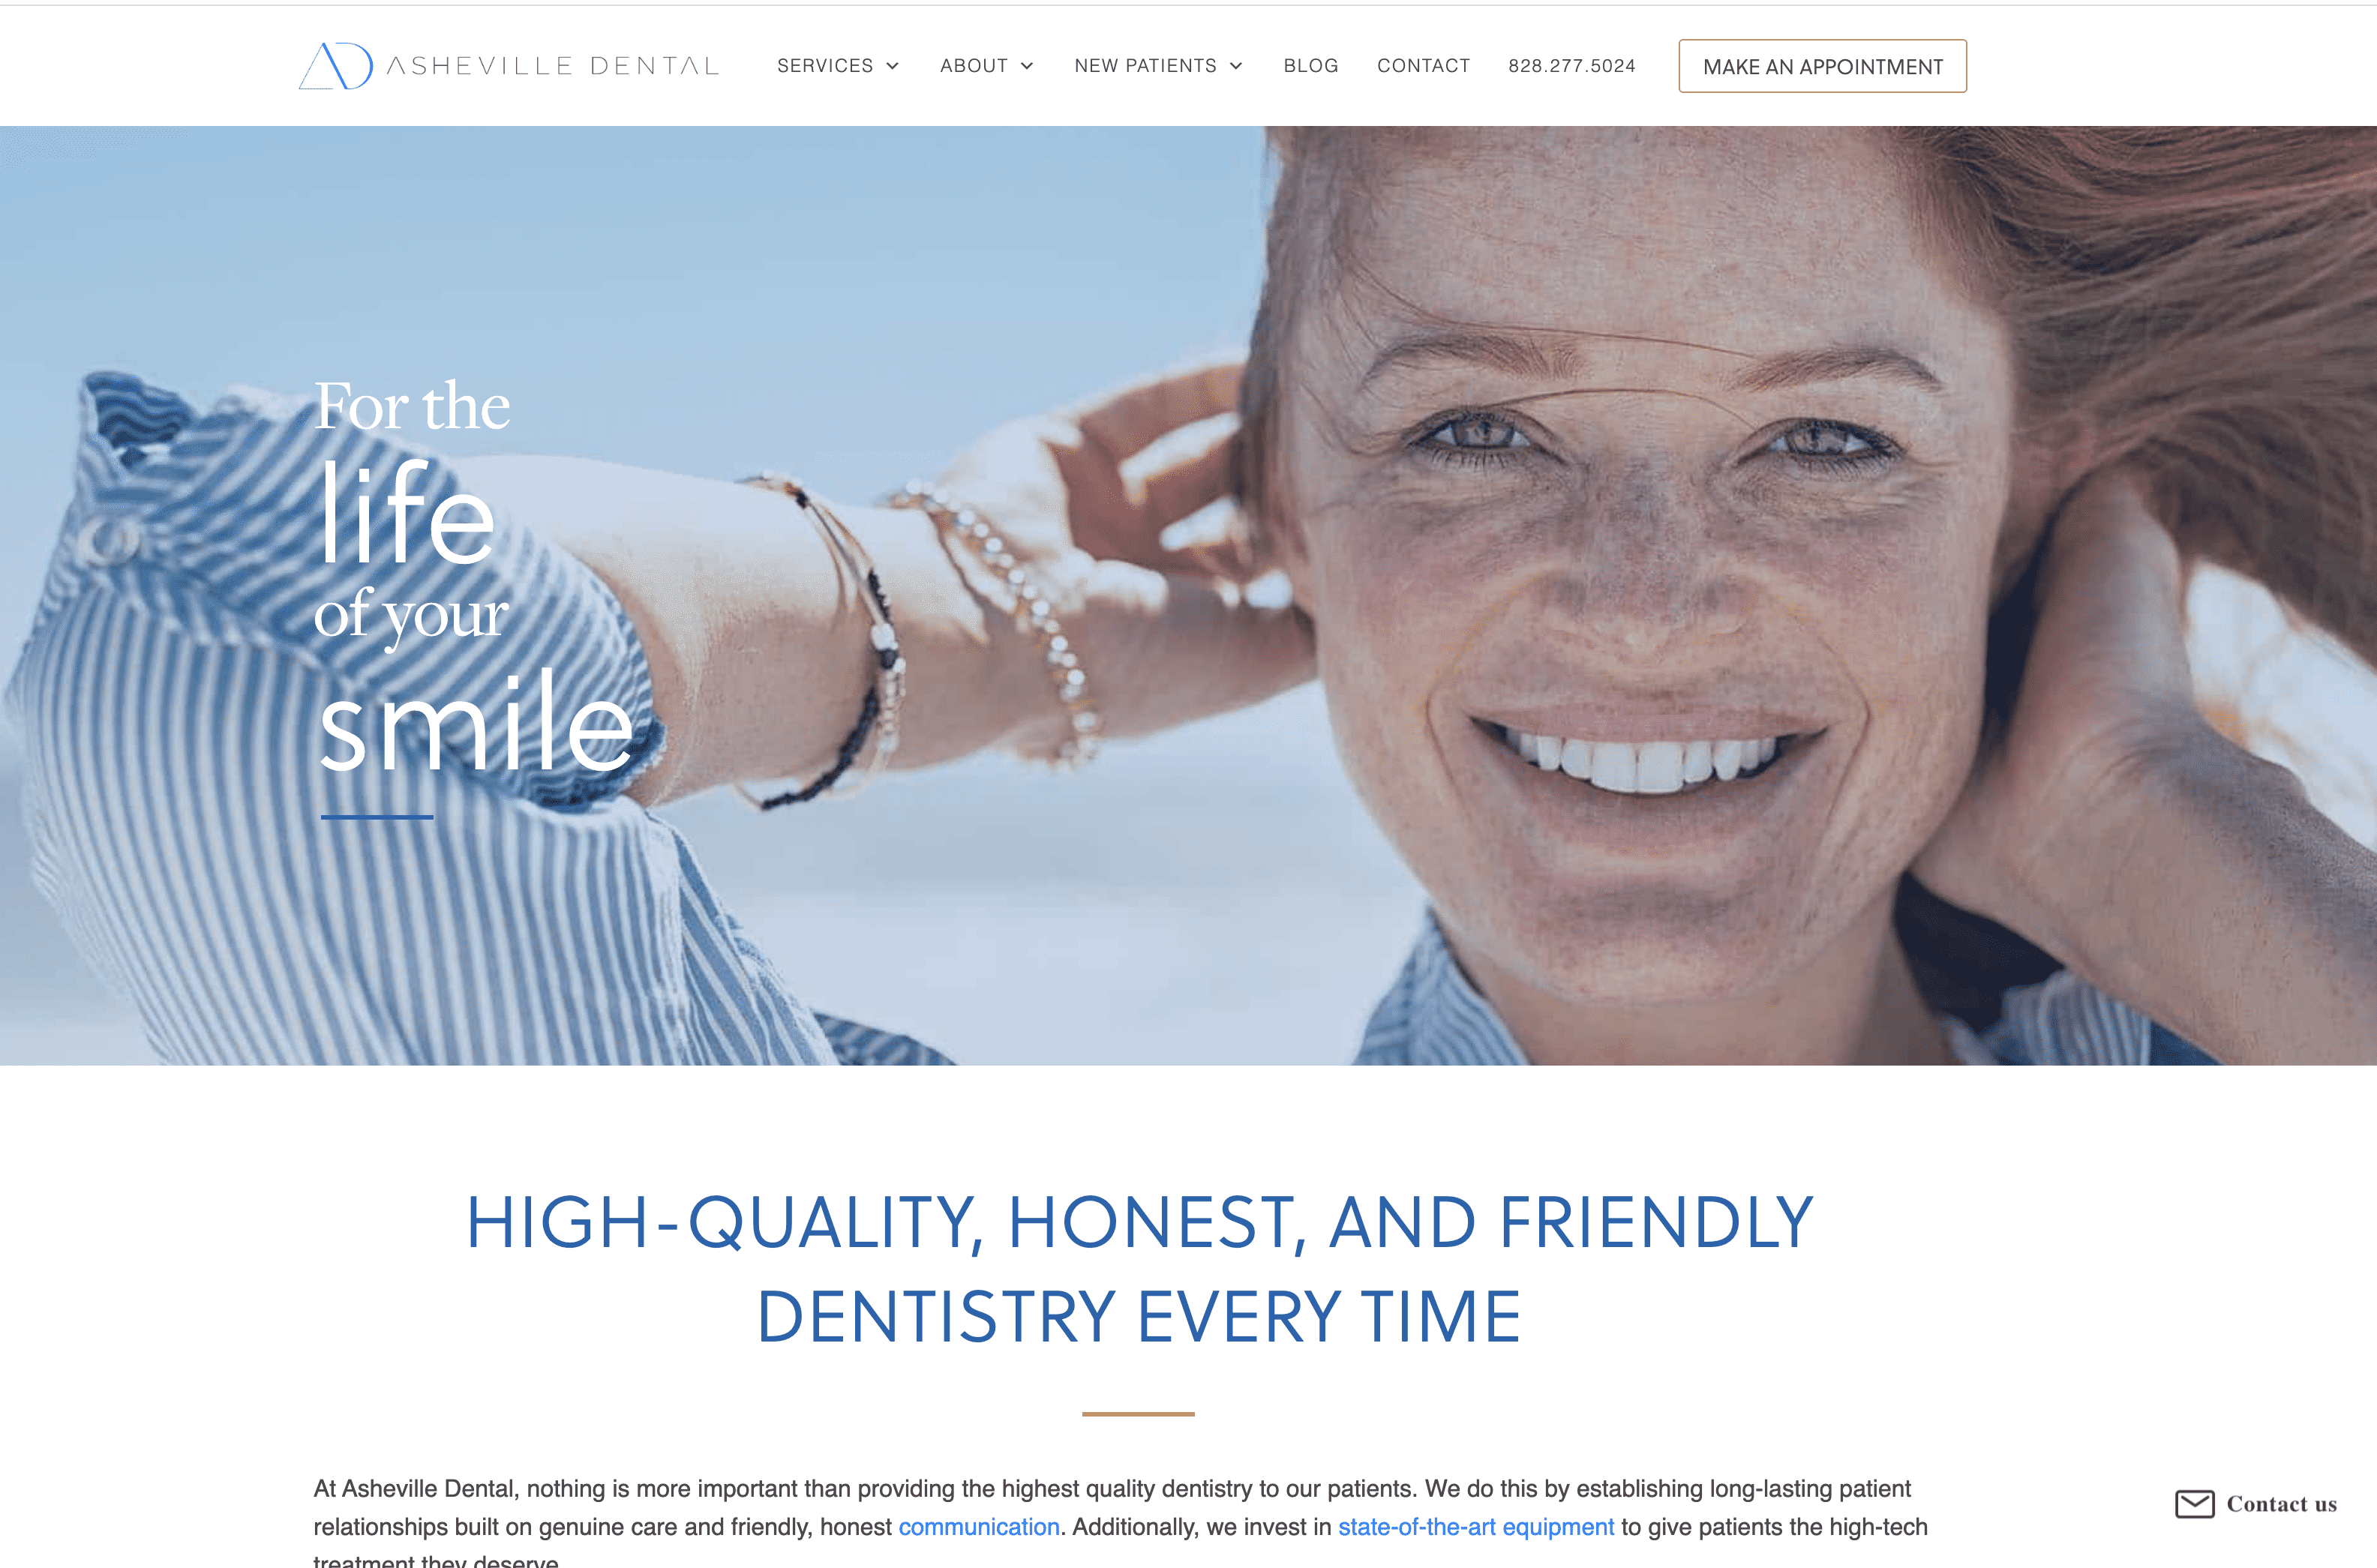 Asheville dental website design services